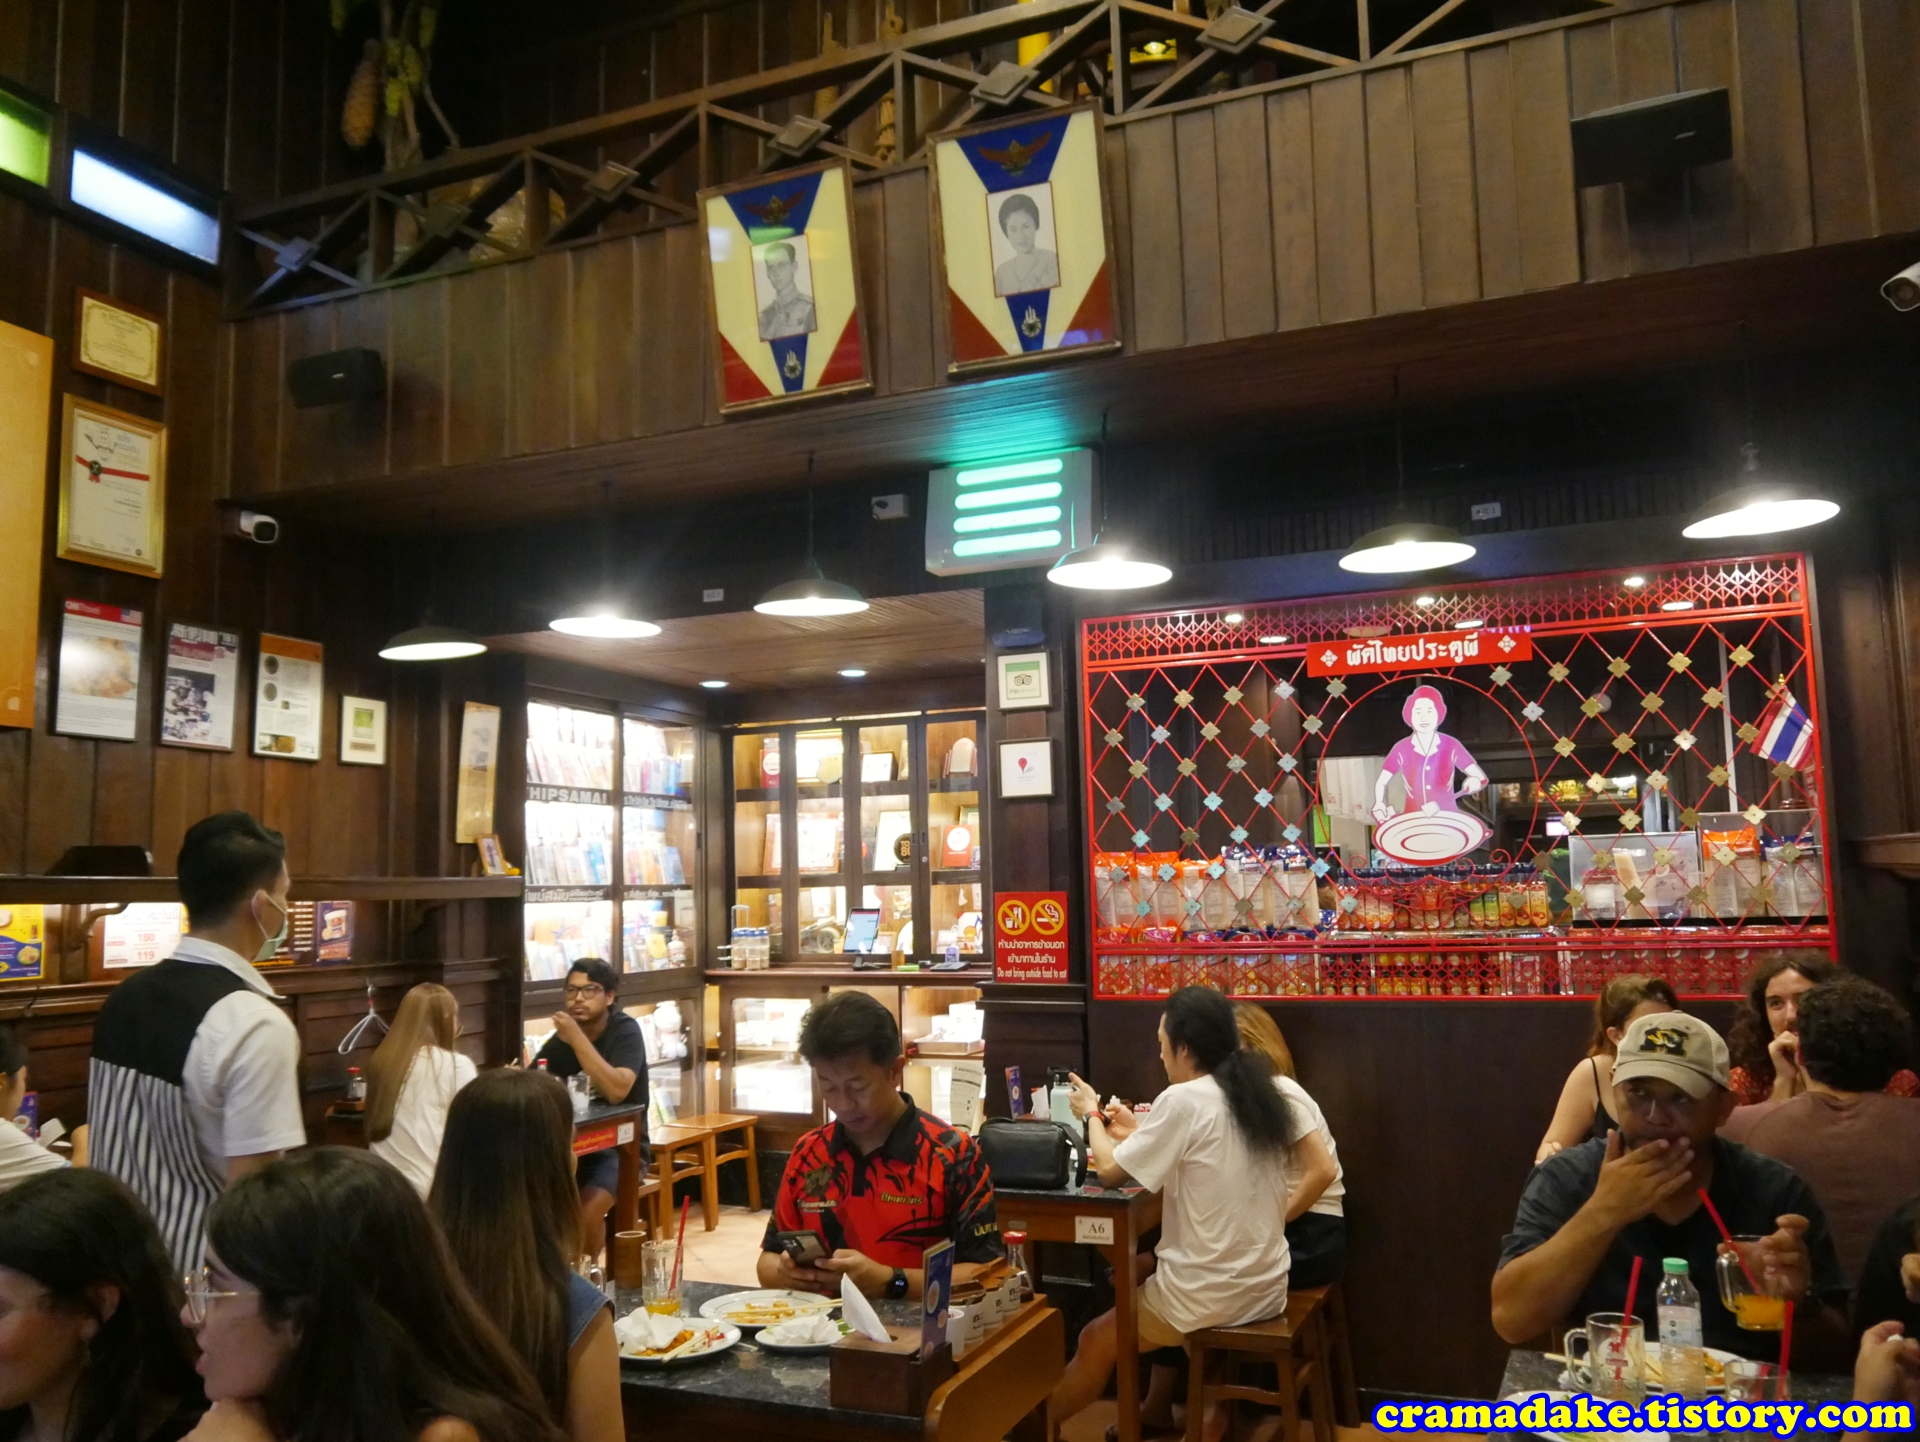 방콕 팟타이 맛집
방콕 팟타이
방콕 팁사마이
방콕 팟타이 추천 맛집